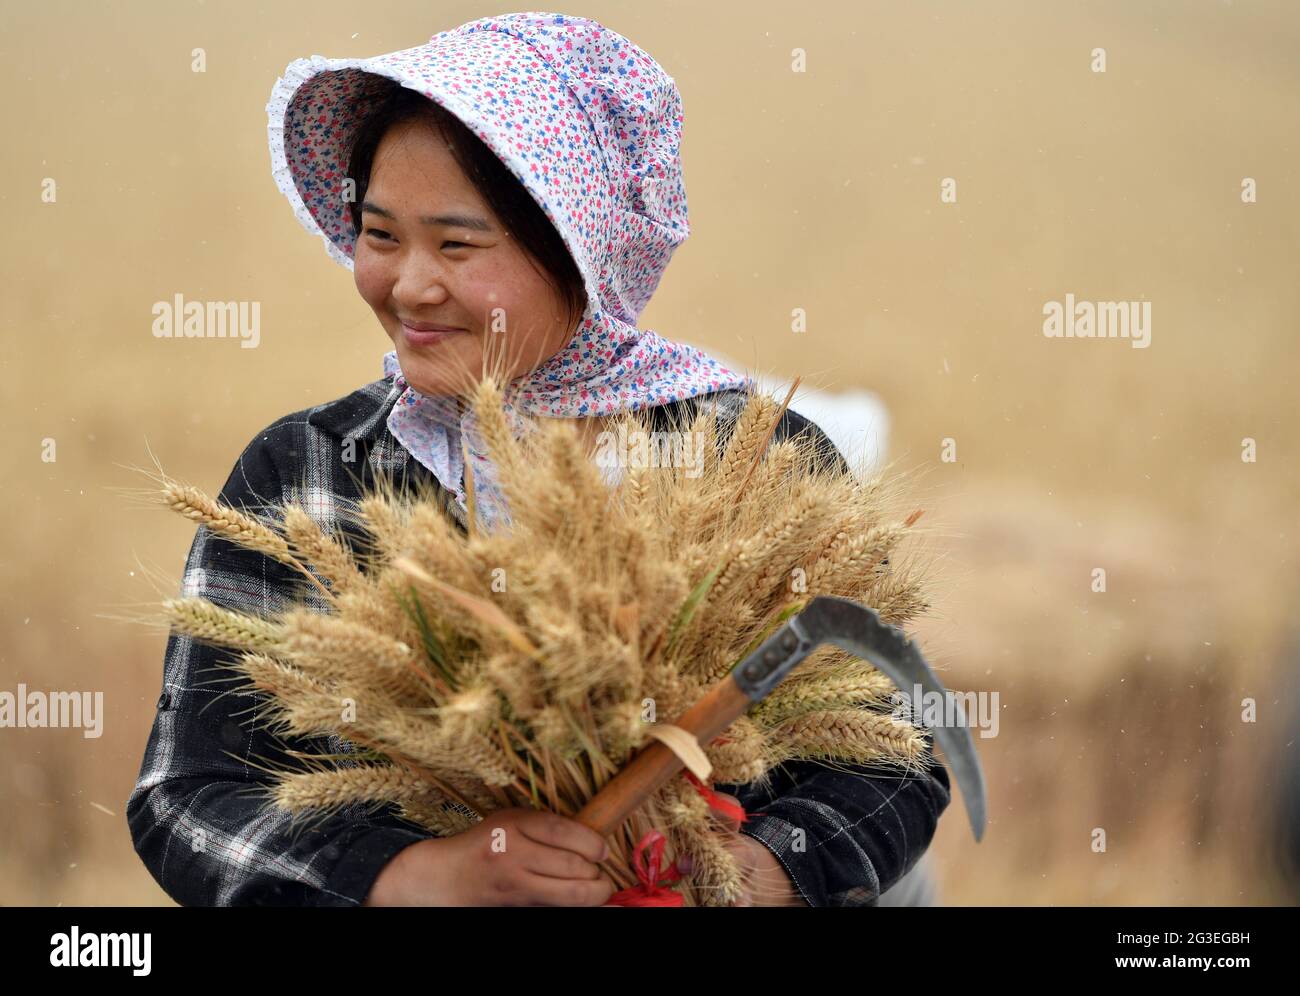 Zhengzhou, provincia cinese di Henan. 2 Giugno 2020. Un agricoltore mostra il grano appena raccolto presso la fattoria Huangfanqu, una fattoria nazionale di dimostrazione dell'agricoltura moderna, nella provincia centrale di Henan, 2 giugno 2020. La fattoria di Huangfanqu, fondata nel 1951, è una delle prime aziende agricole meccanizzate di proprietà statale sin dalla fondazione della Repubblica popolare Cinese. Ora la fattoria Huangfanqu, con una superficie di circa 7,000 ettari, vede il livello completo di meccanizzazione del lavoro agricolo che raggiunge il 99%. Credit: Li Jianan/Xinhua/Alamy Live News Foto Stock